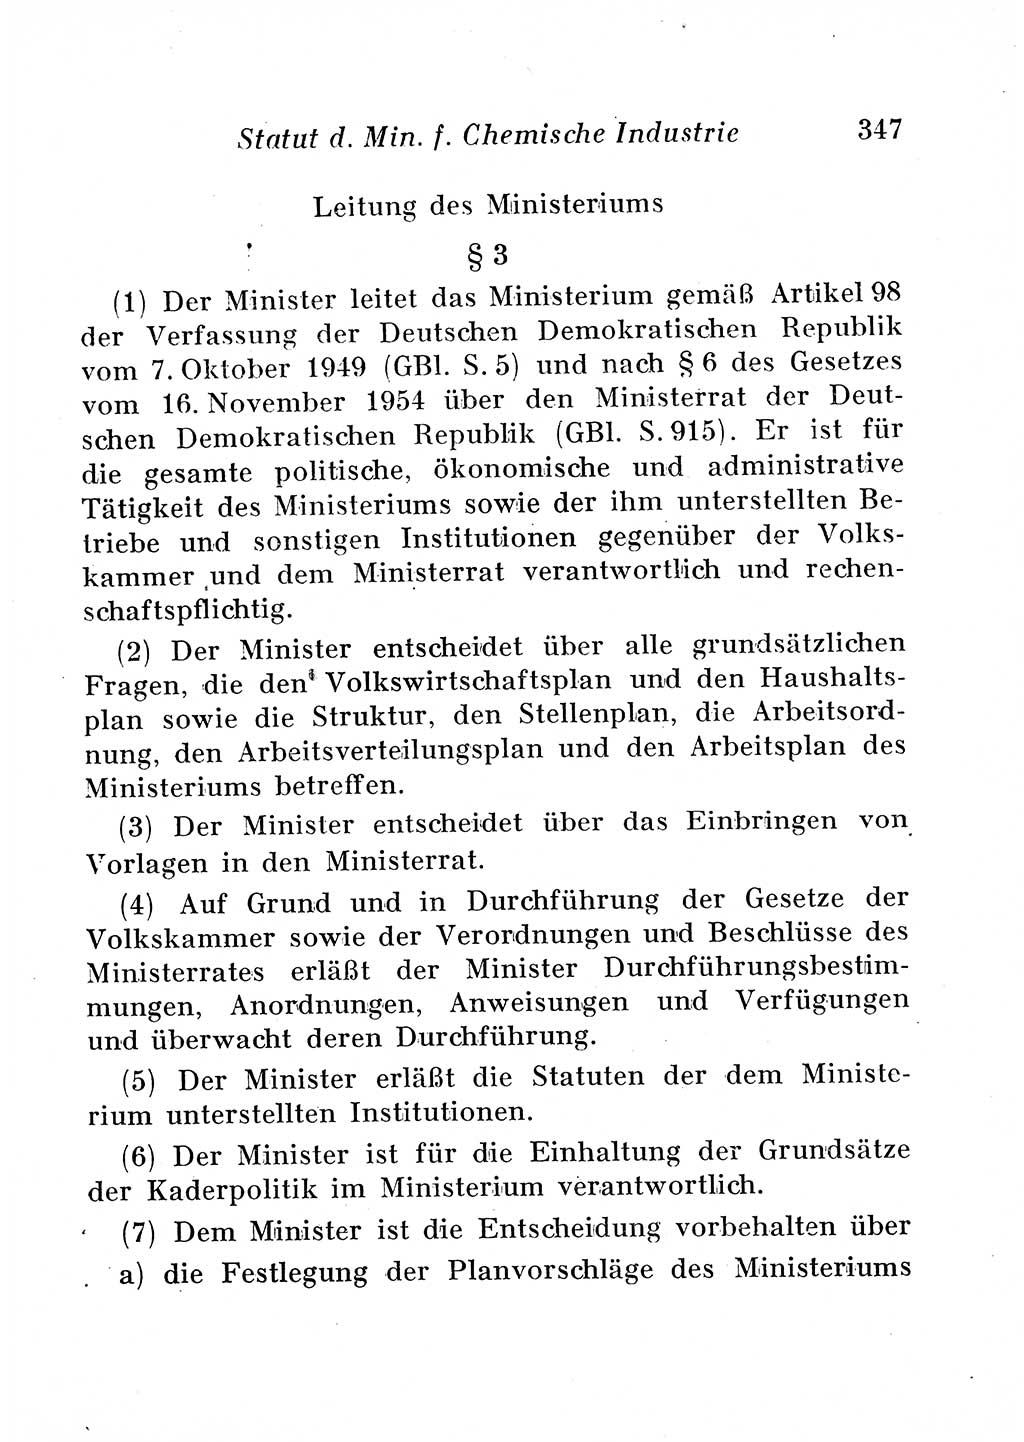 Staats- und verwaltungsrechtliche Gesetze der Deutschen Demokratischen Republik (DDR) 1958, Seite 347 (StVerwR Ges. DDR 1958, S. 347)